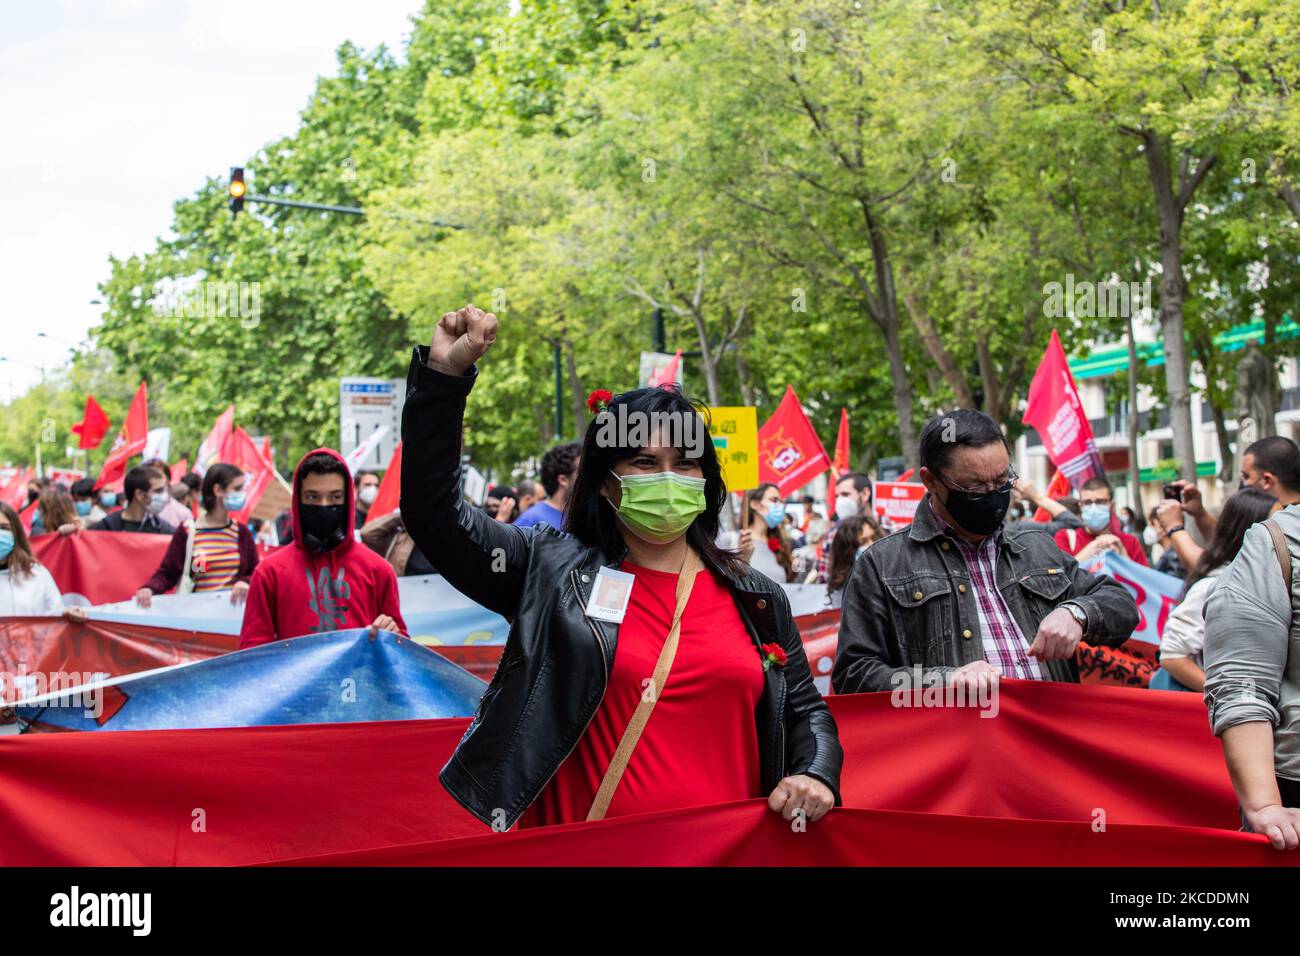 Am 25. April 2021 marschieren Menschen mit roten Nelken und der portugiesischen Flagge zum Gedenken an den Jahrestag der portugiesischen Revolution in Lissabon, Portugal. Portugal feiert ein weiteres Jahr auf der Straße über die Aprilrevolution, die die Diktatur am 25. April 1974 beendete. (Foto von Nuno Cruz/NurPhoto) Stockfoto